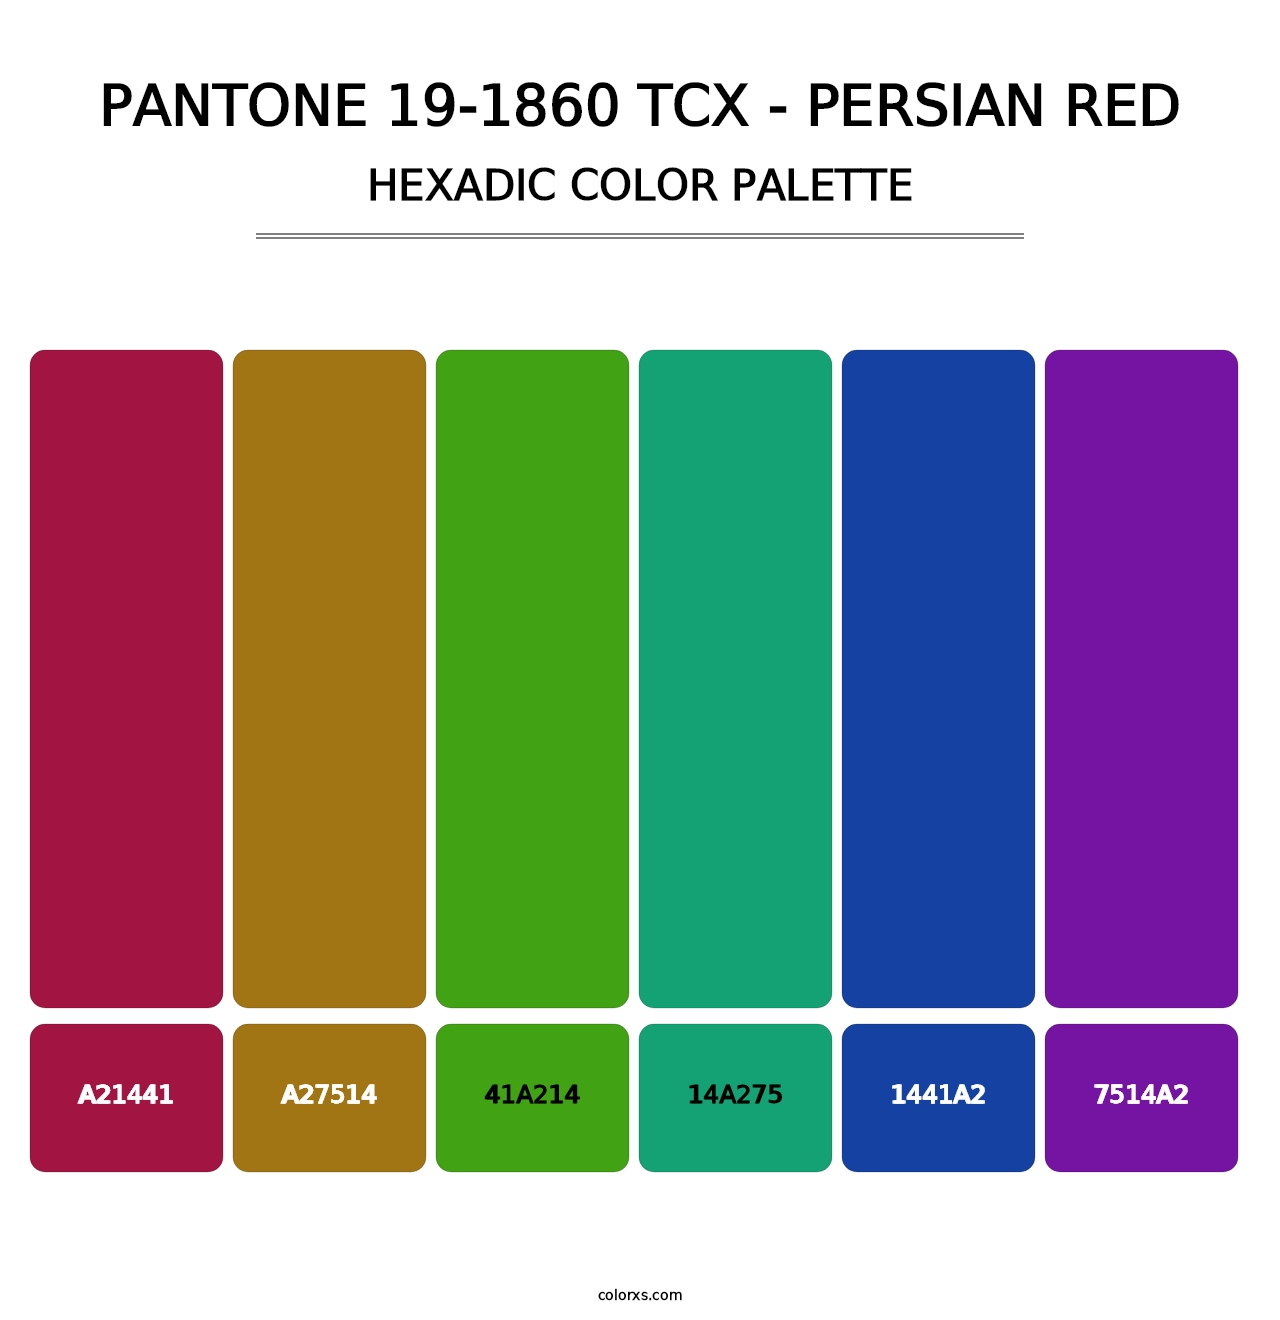 PANTONE 19-1860 TCX - Persian Red - Hexadic Color Palette